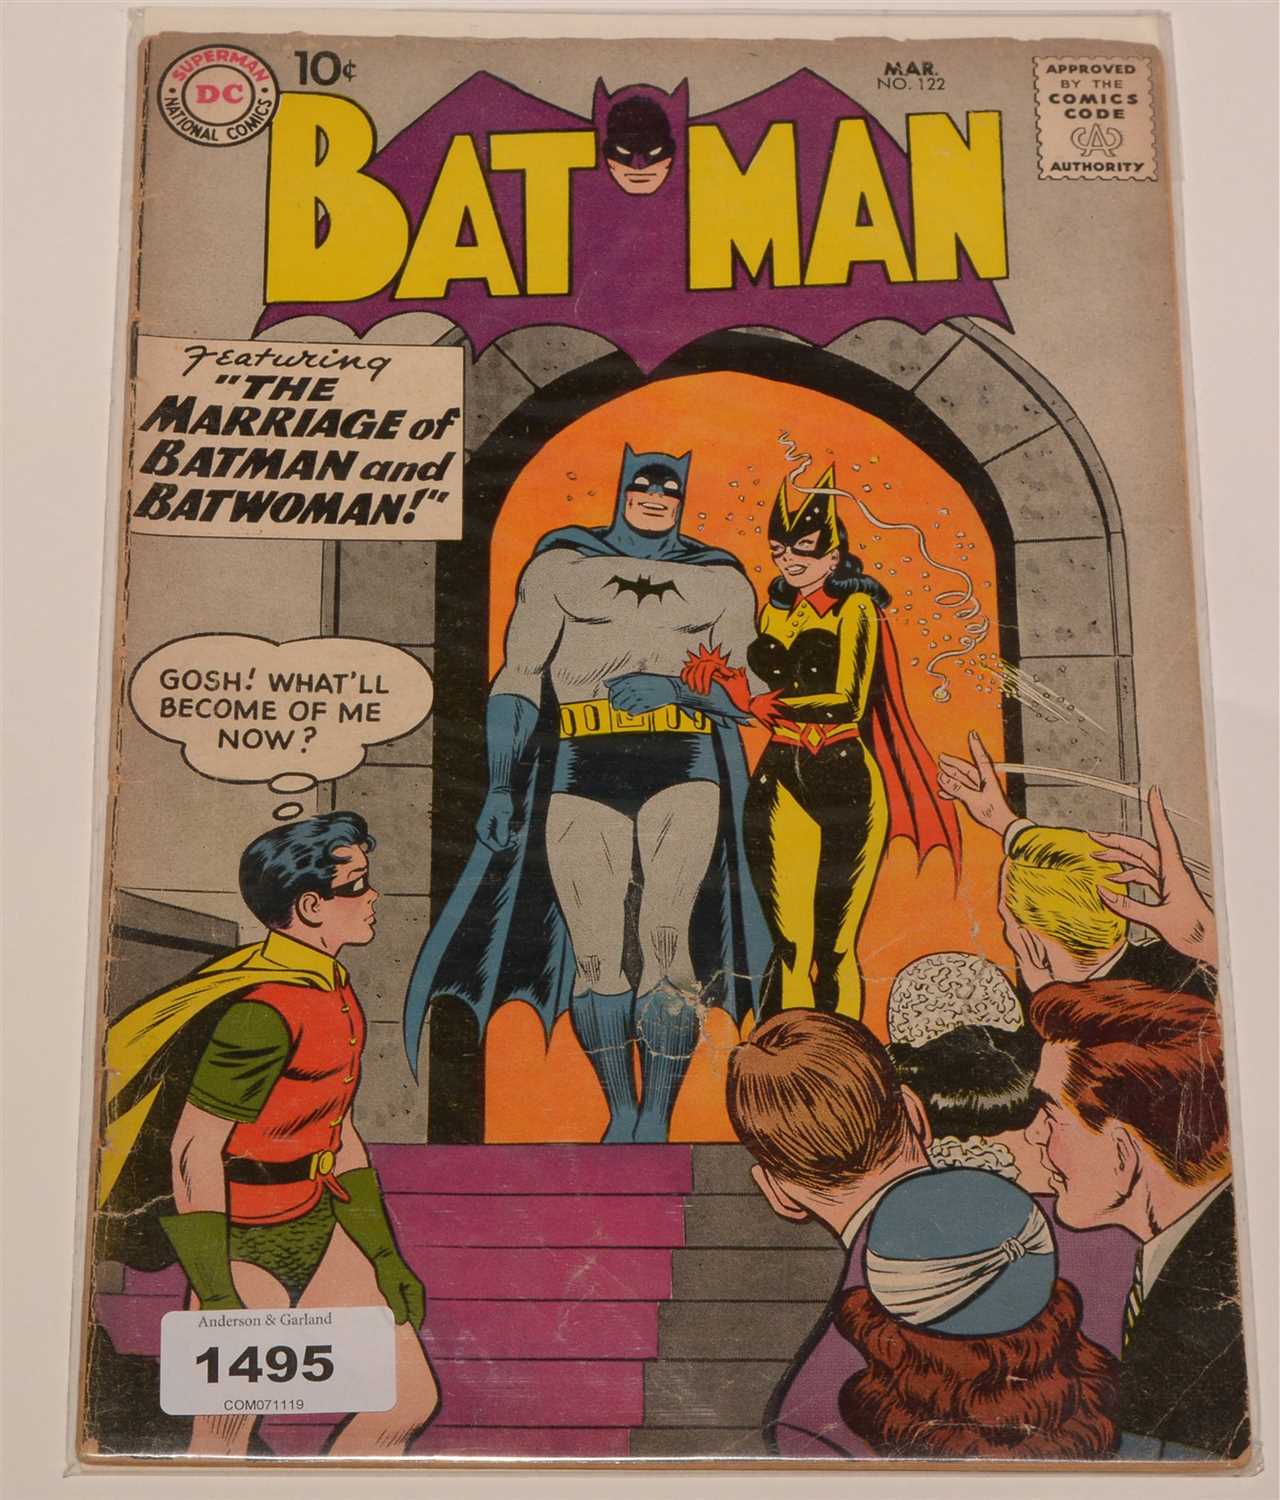 Lot 1495 - Batman No. 122